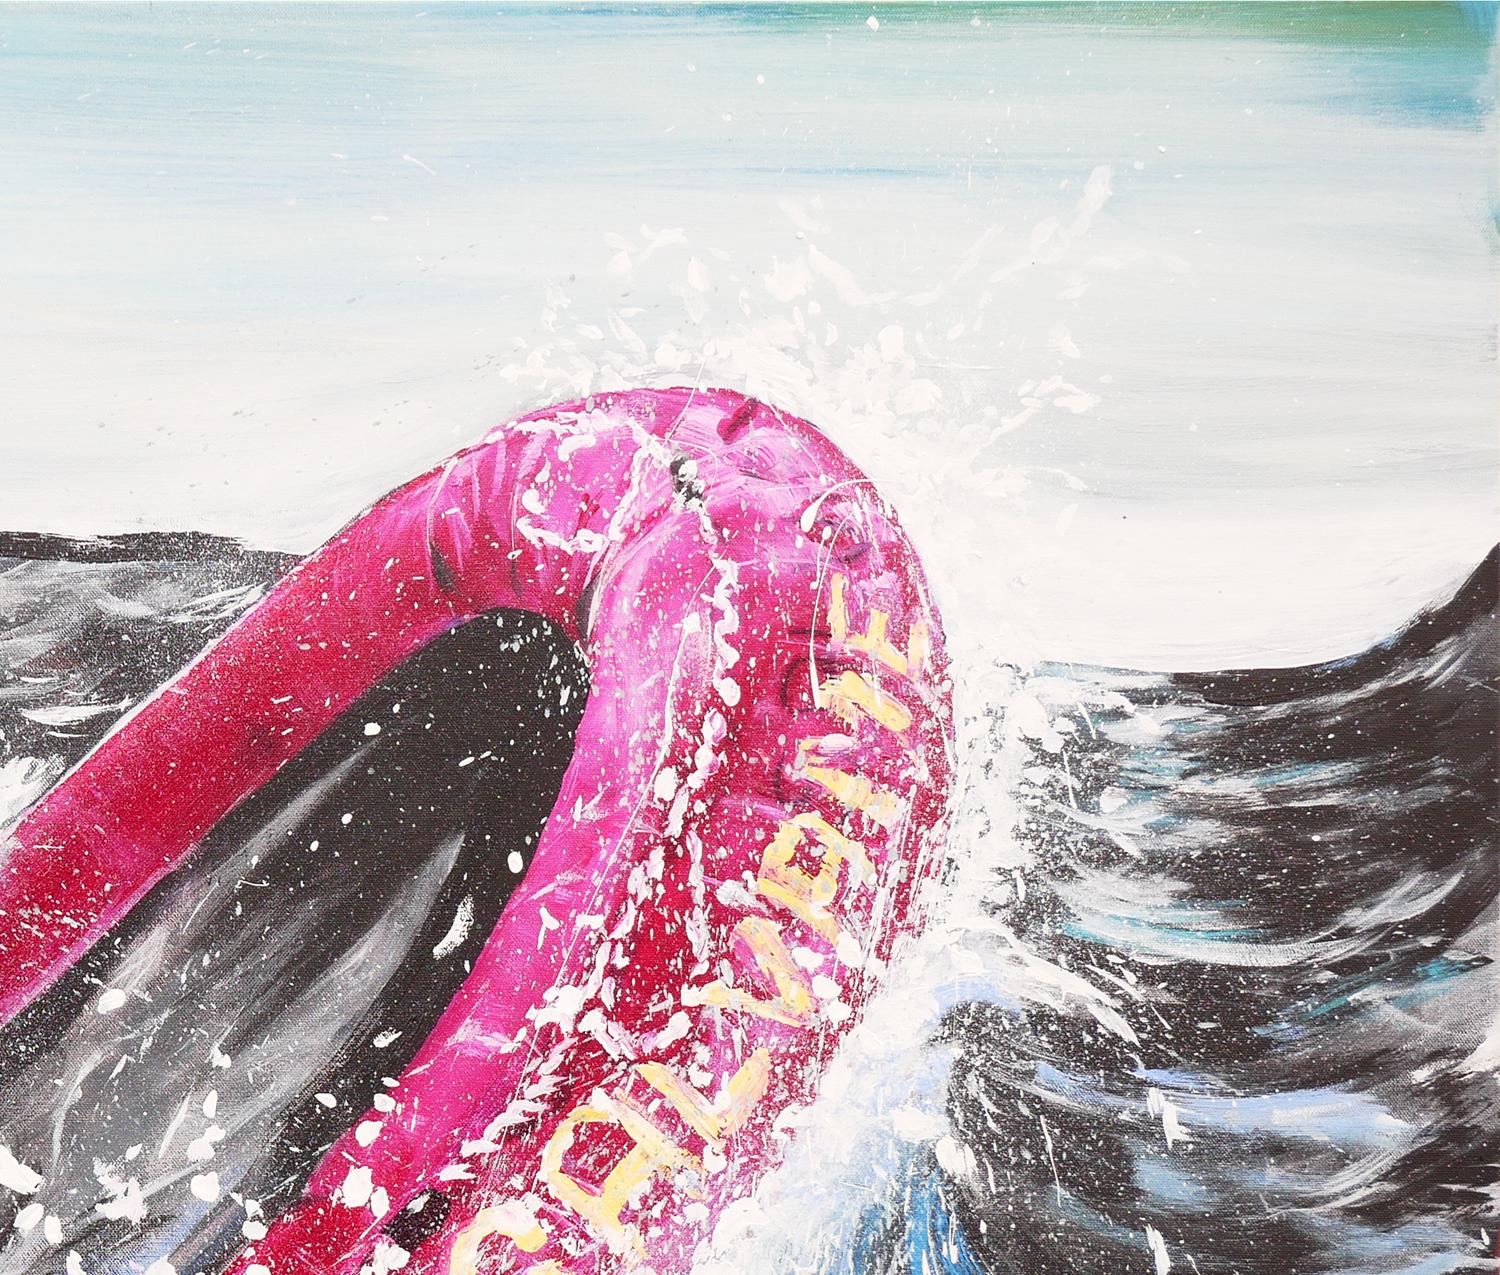 Paysage marin abstrait contemporain bleu et rose de l'artiste Moisés Villafuerte, de Houston, au Texas. Cette peinture abstraite représente un grand bateau de sauvetage magenta avec le texte 